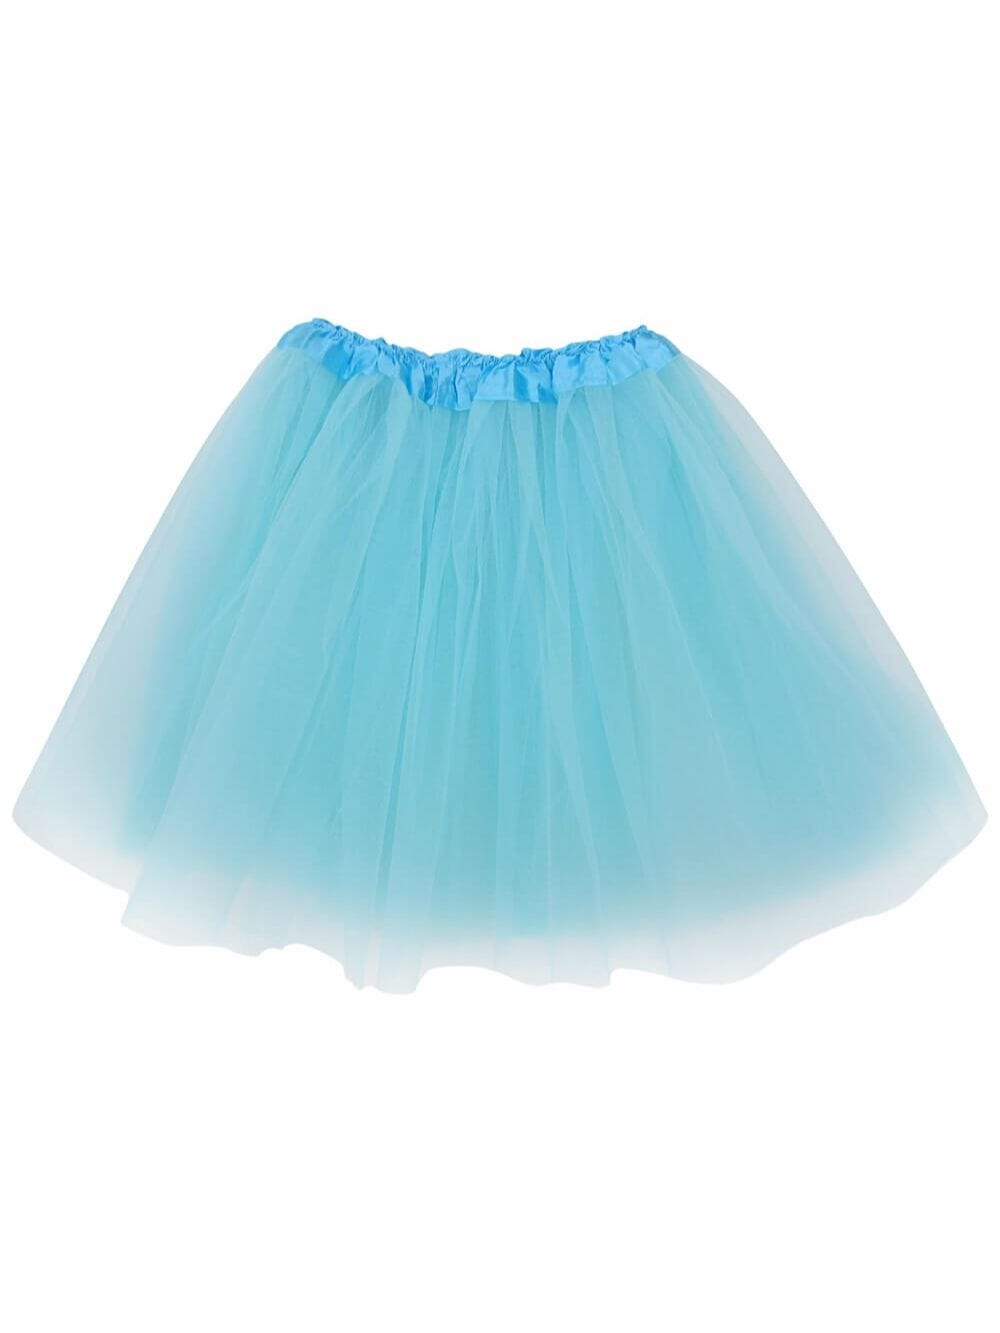 Aqua Blue Tutu Skirt - Kids Size 3-Layer Tulle Basic Ballet Dance Costume Tutus for Girls - Sydney So Sweet